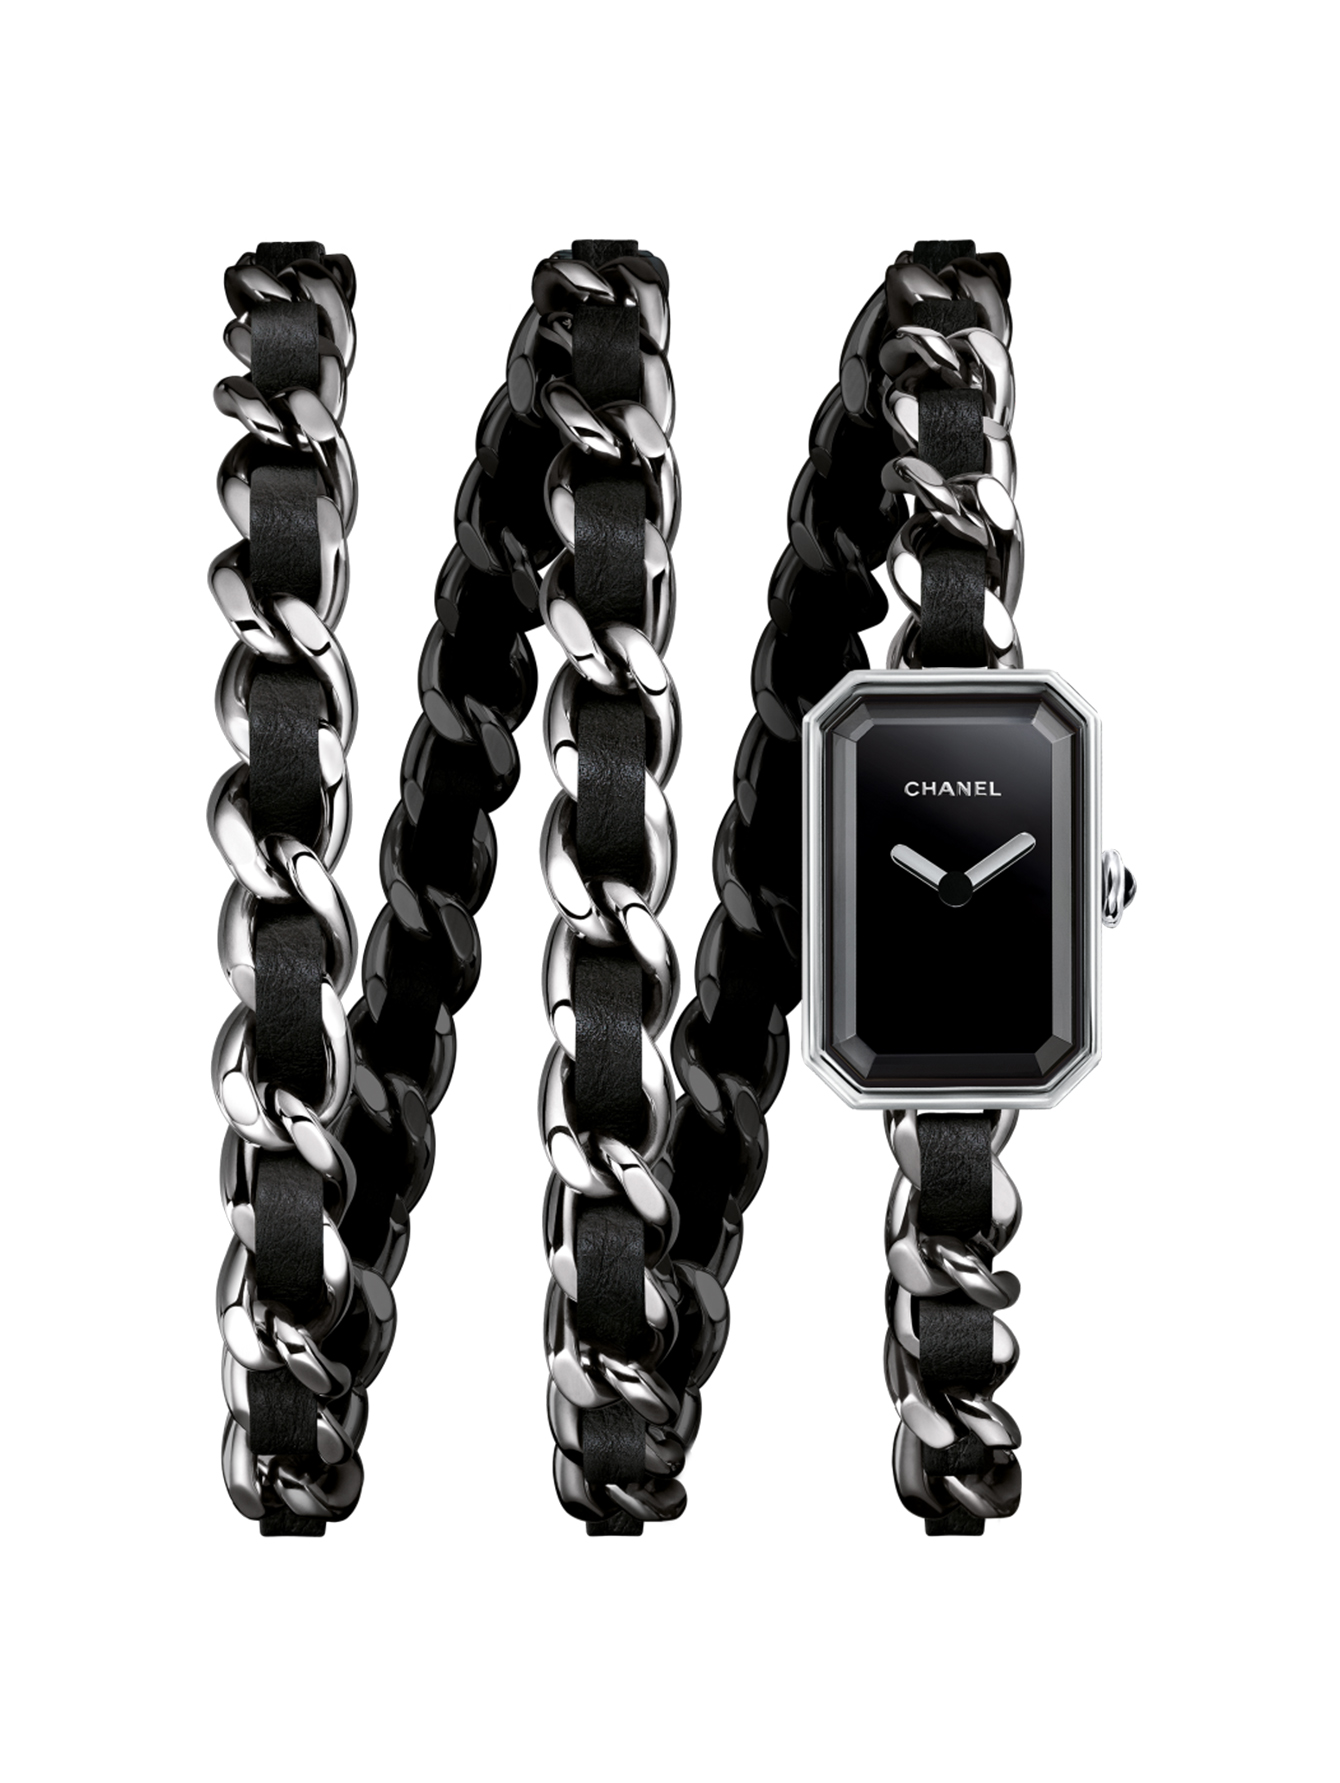 Часы Chanel H3749 Premiere - купить оригинал по выгодной цене в интернет-магазине